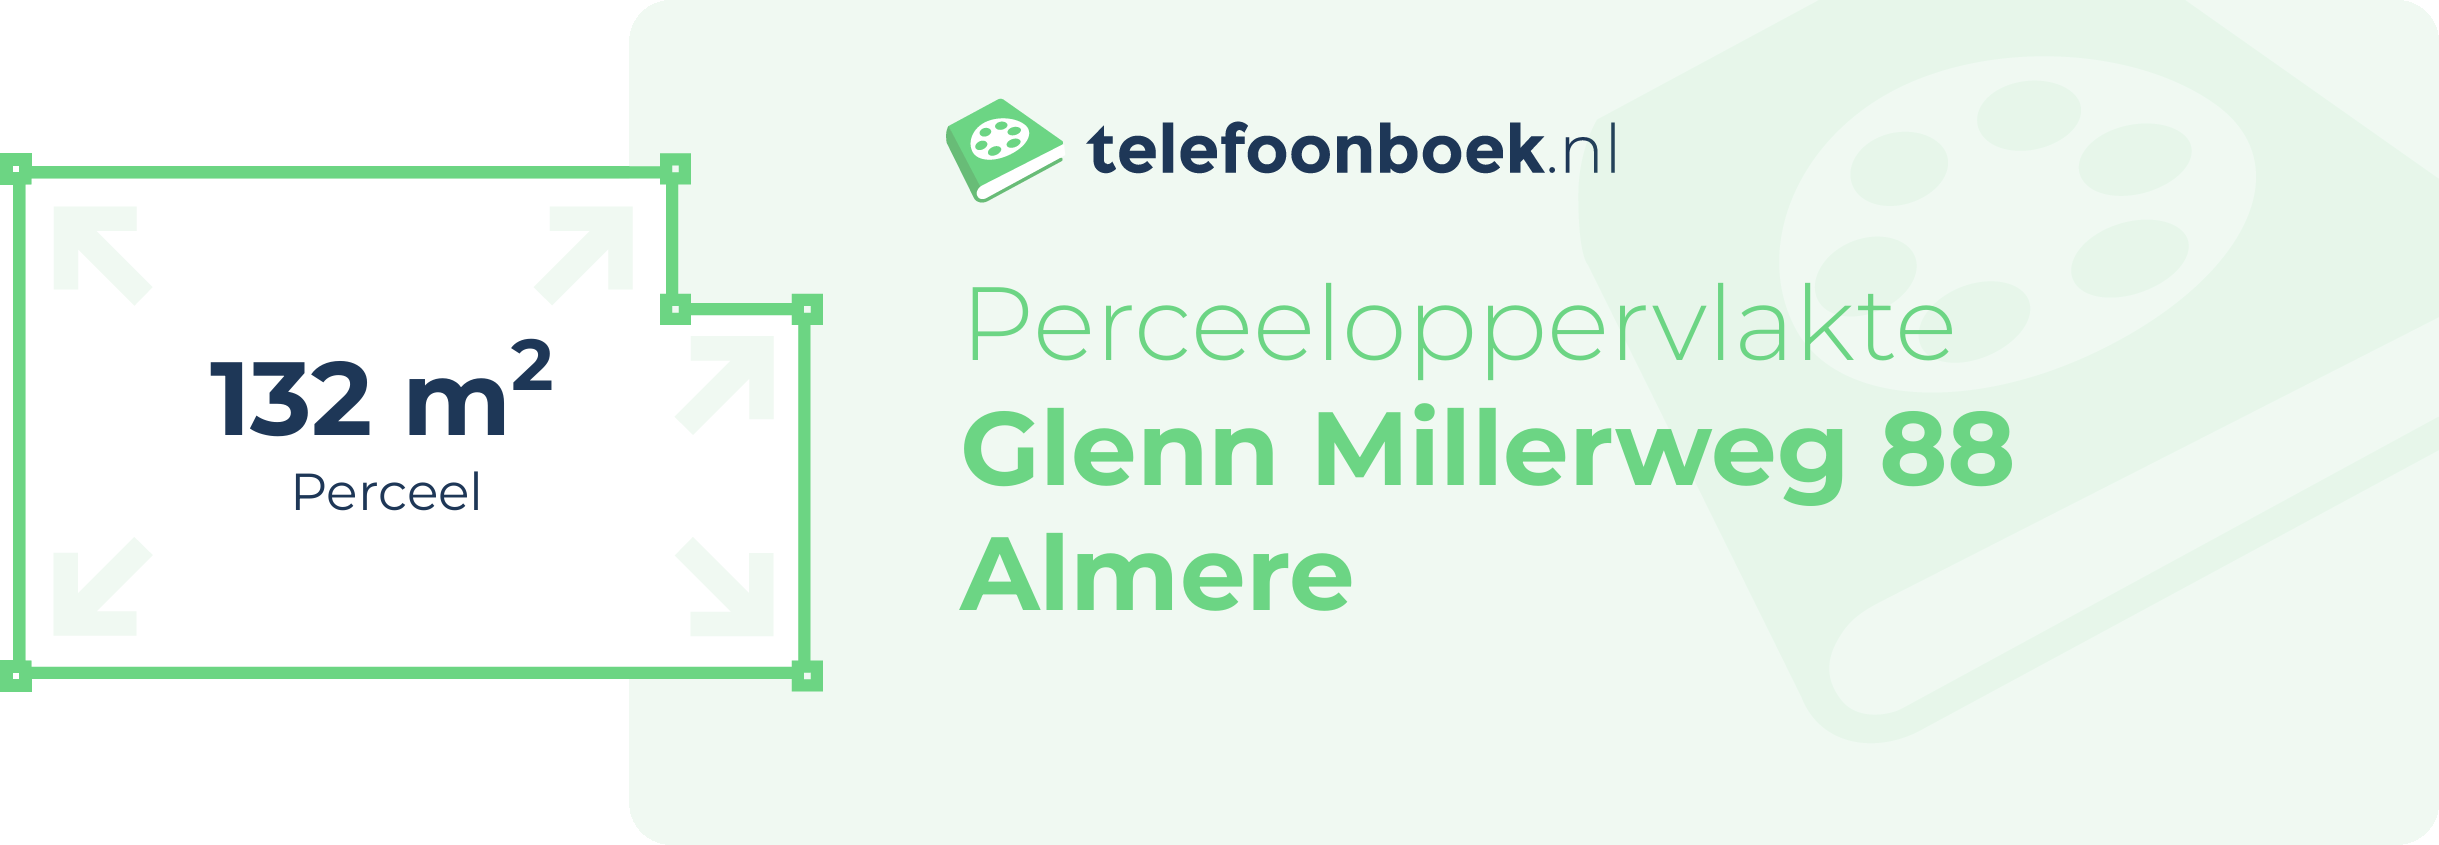 Perceeloppervlakte Glenn Millerweg 88 Almere